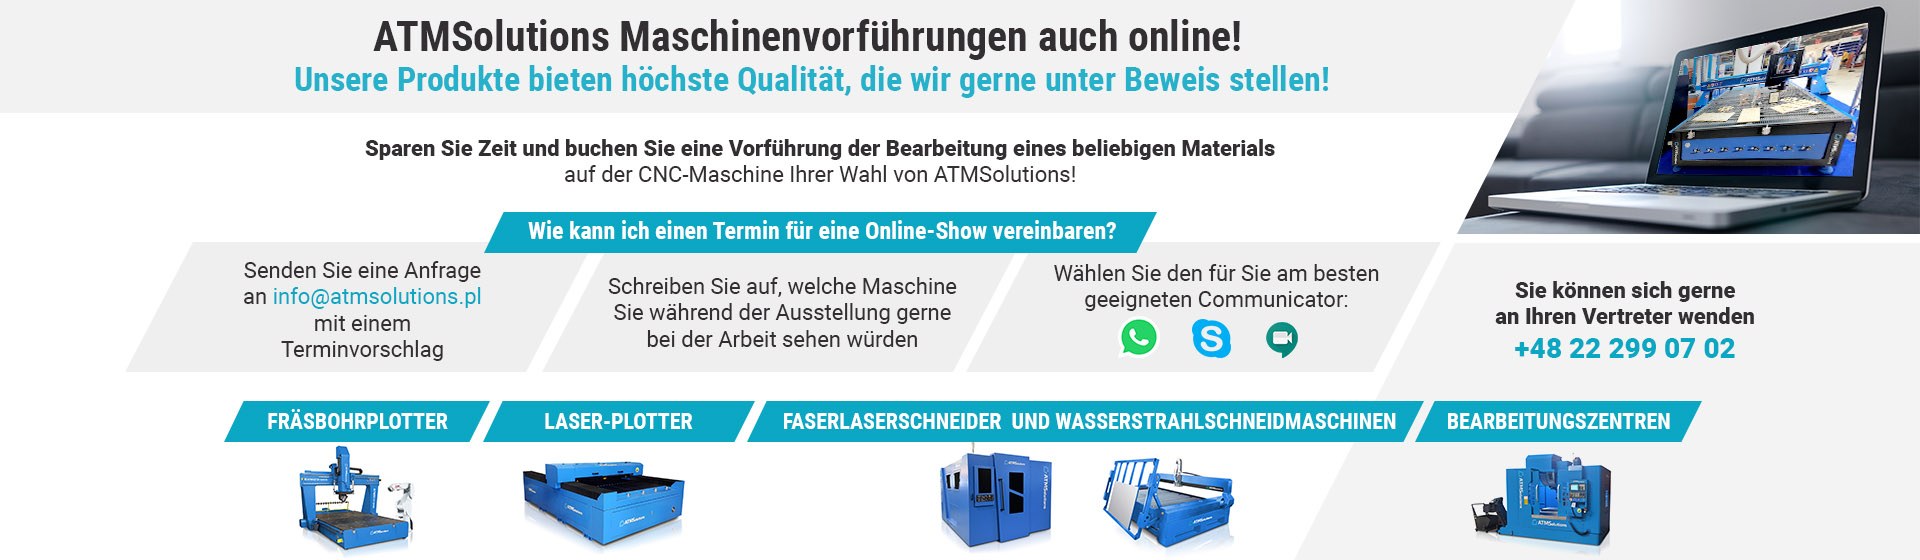 ATMSolutions Maschinenvorführungen auch online!